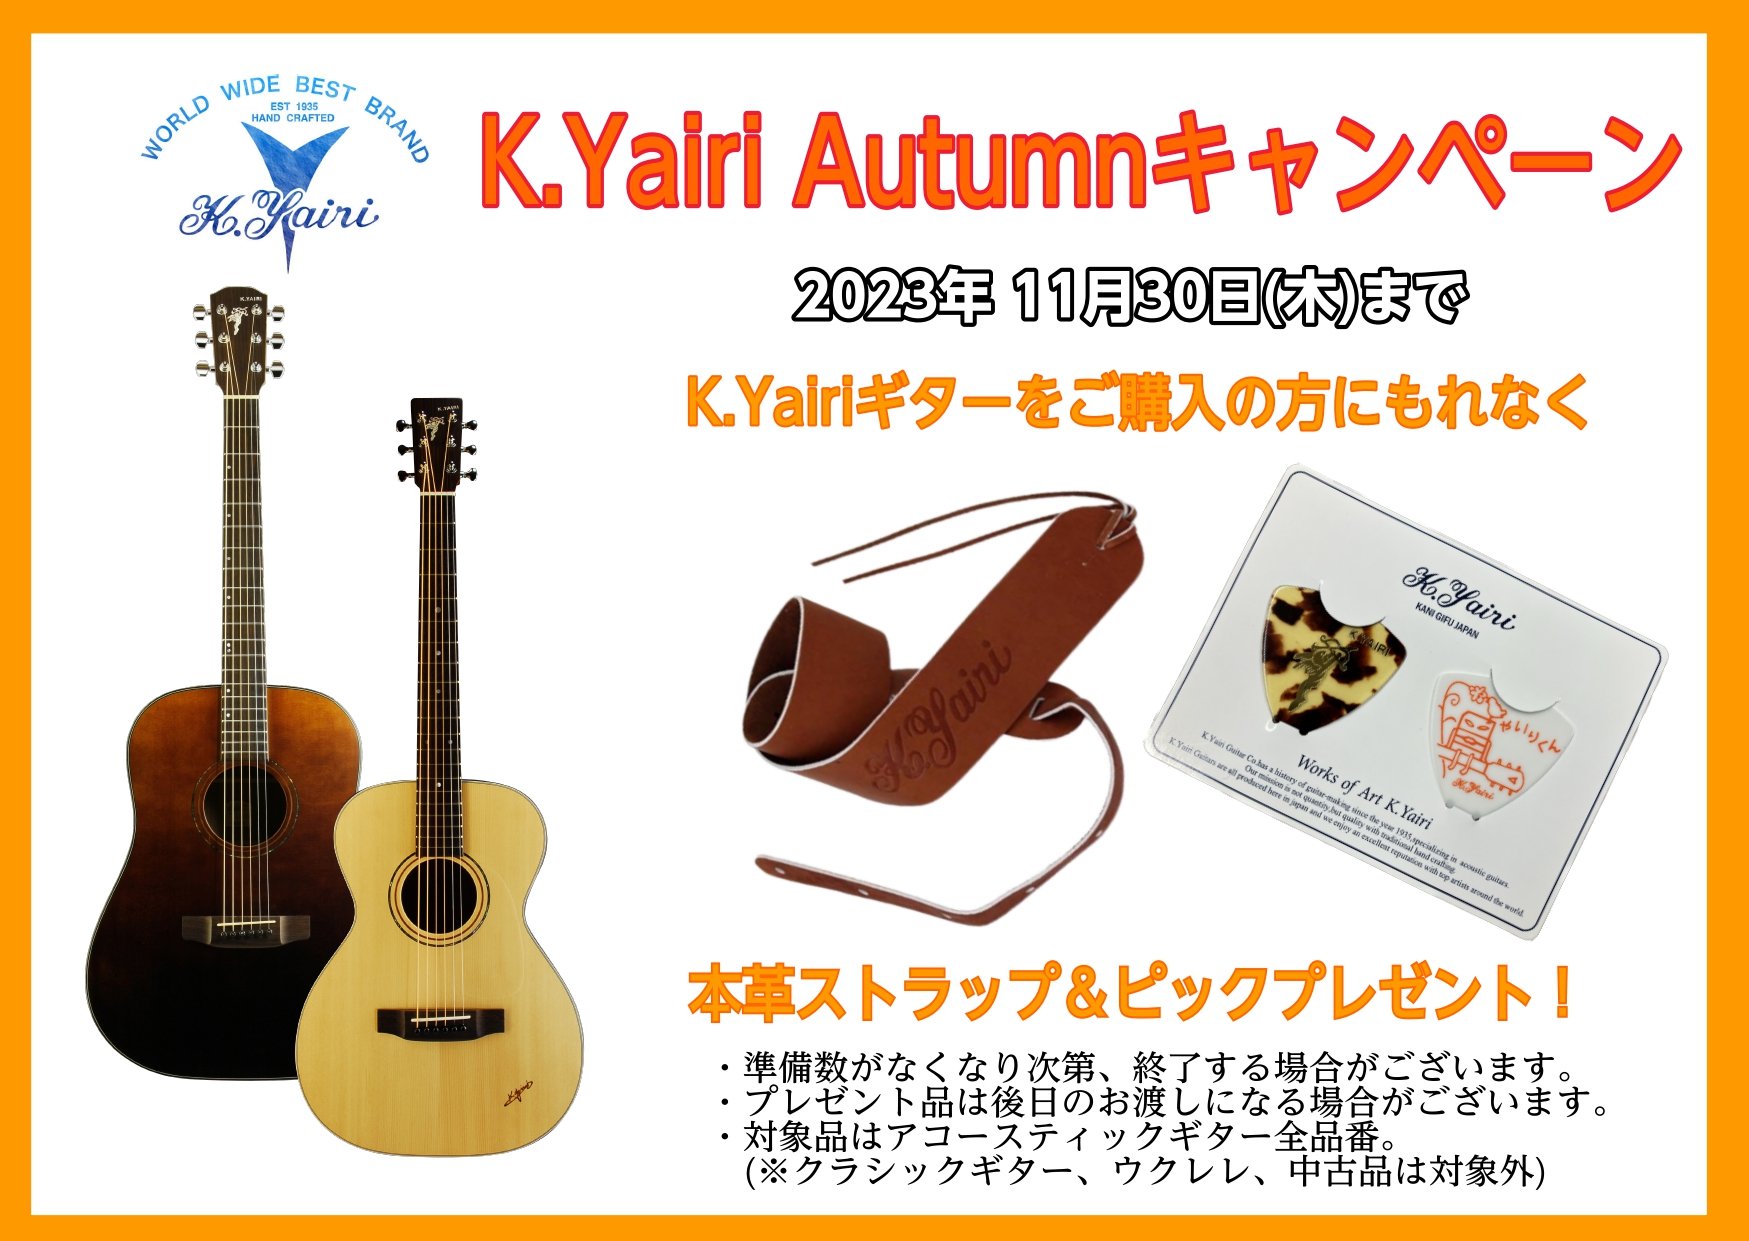 CONTENTS国産ギターの名ブランド、K.YAIRI のキャンペーン始まりました！当店オススメのK.Yairiギター国産ギターの名ブランド、K.YAIRI のキャンペーン始まりました！ 対象モデルご購入の方へのプレゼントキャンペーンです。本革ストラップは柔らかく体に馴染みます！早い者勝ちですので、 […]